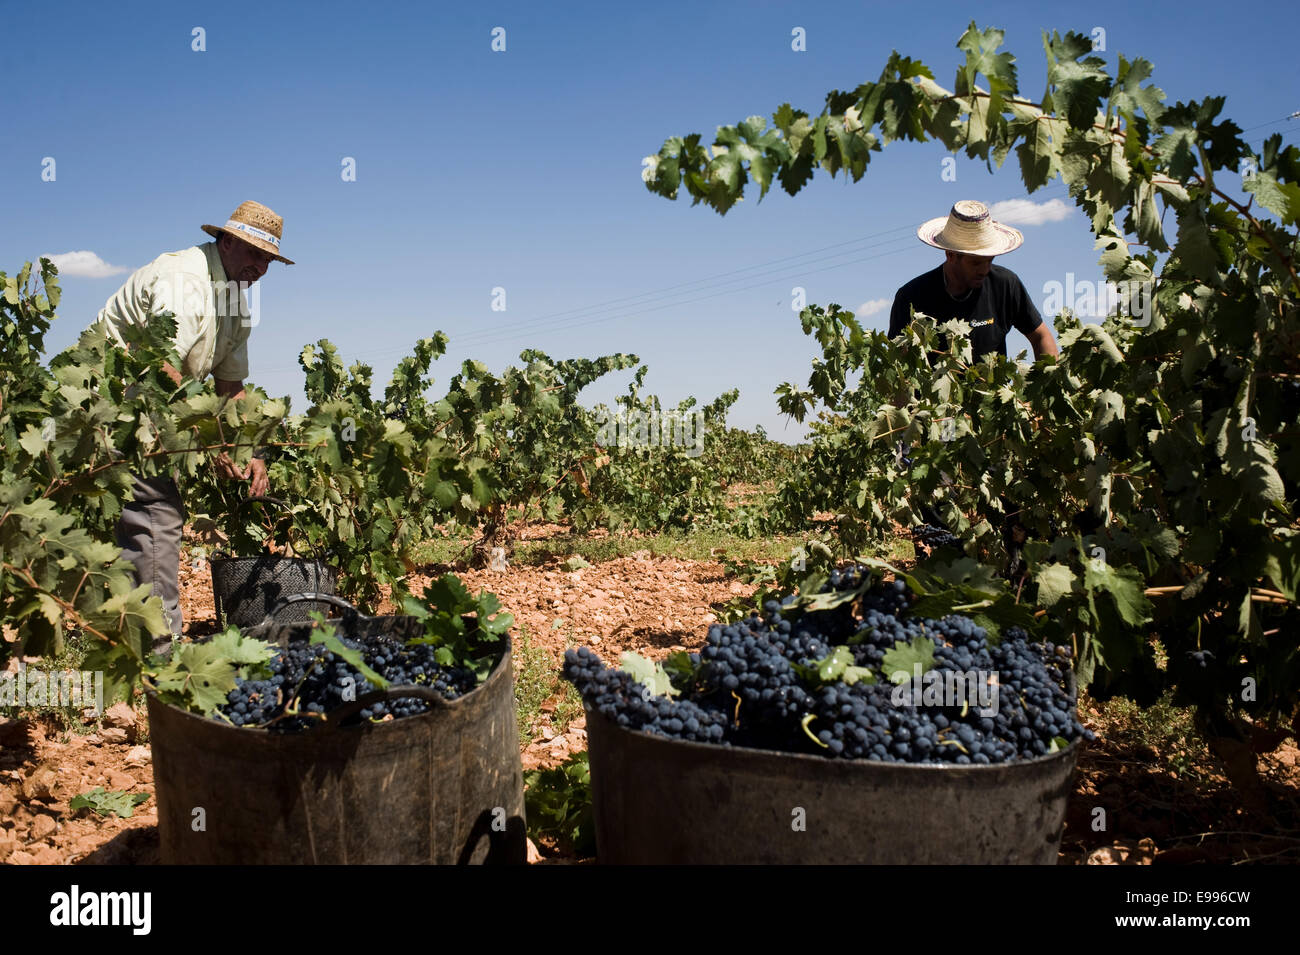 Travailleurs temporaires ramasser les raisins de tempranillo à Valdepeñas, Ciudad Real, Espagne. vignoble groupe de travail saisonnier Travailleur agricole Banque D'Images